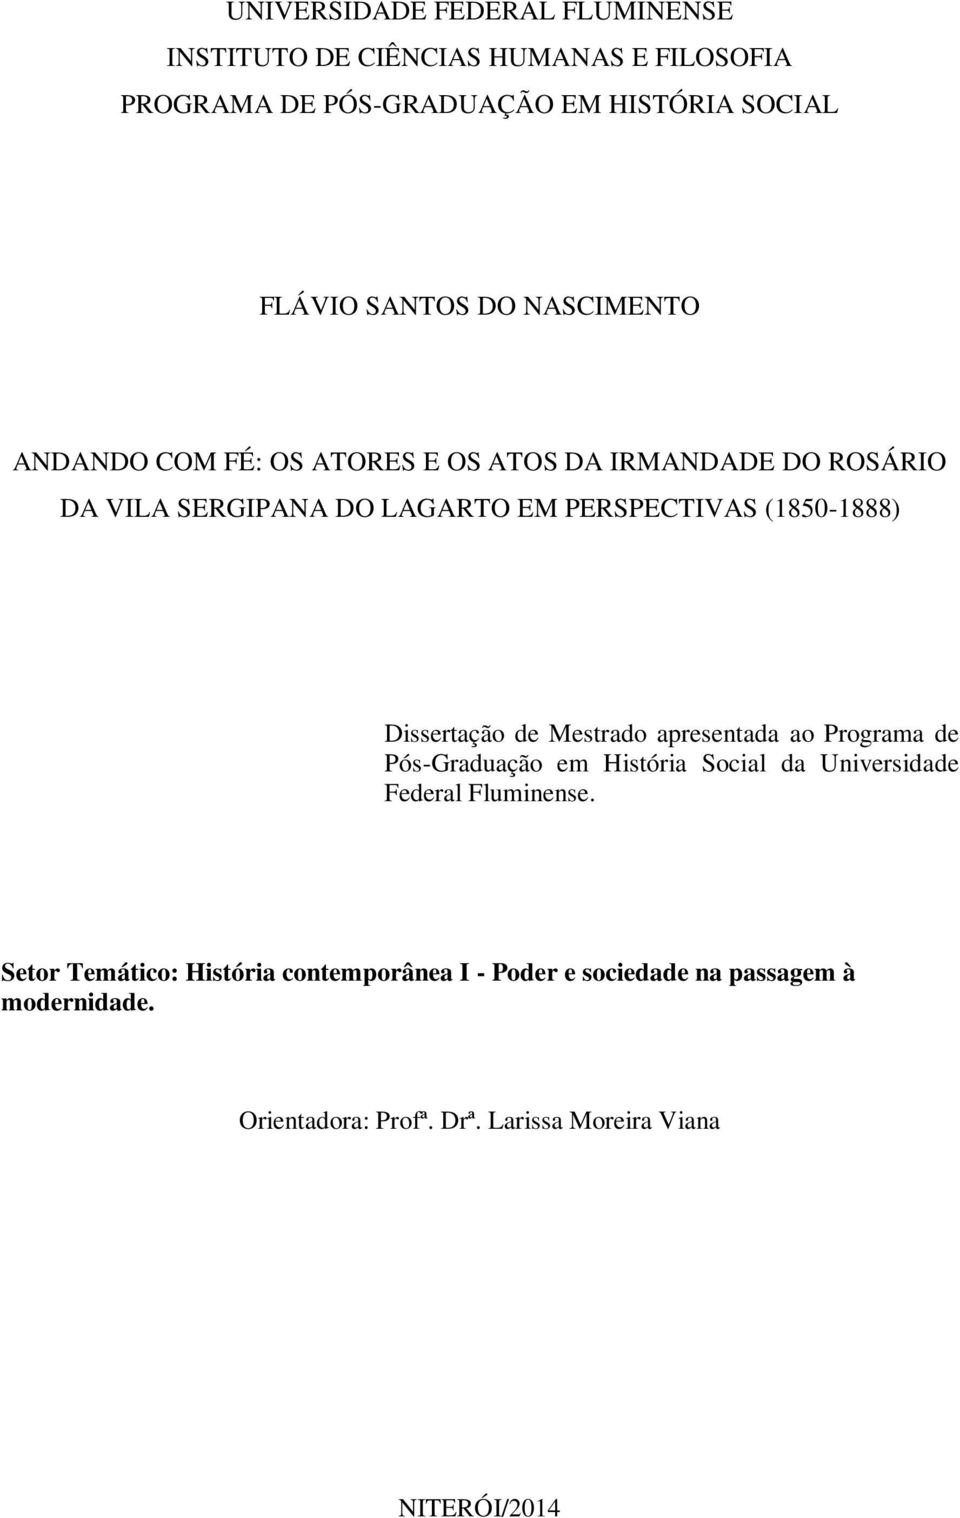 Dissertação de Mestrado apresentada ao Programa de Pós-Graduação em História Social da Universidade Federal Fluminense.